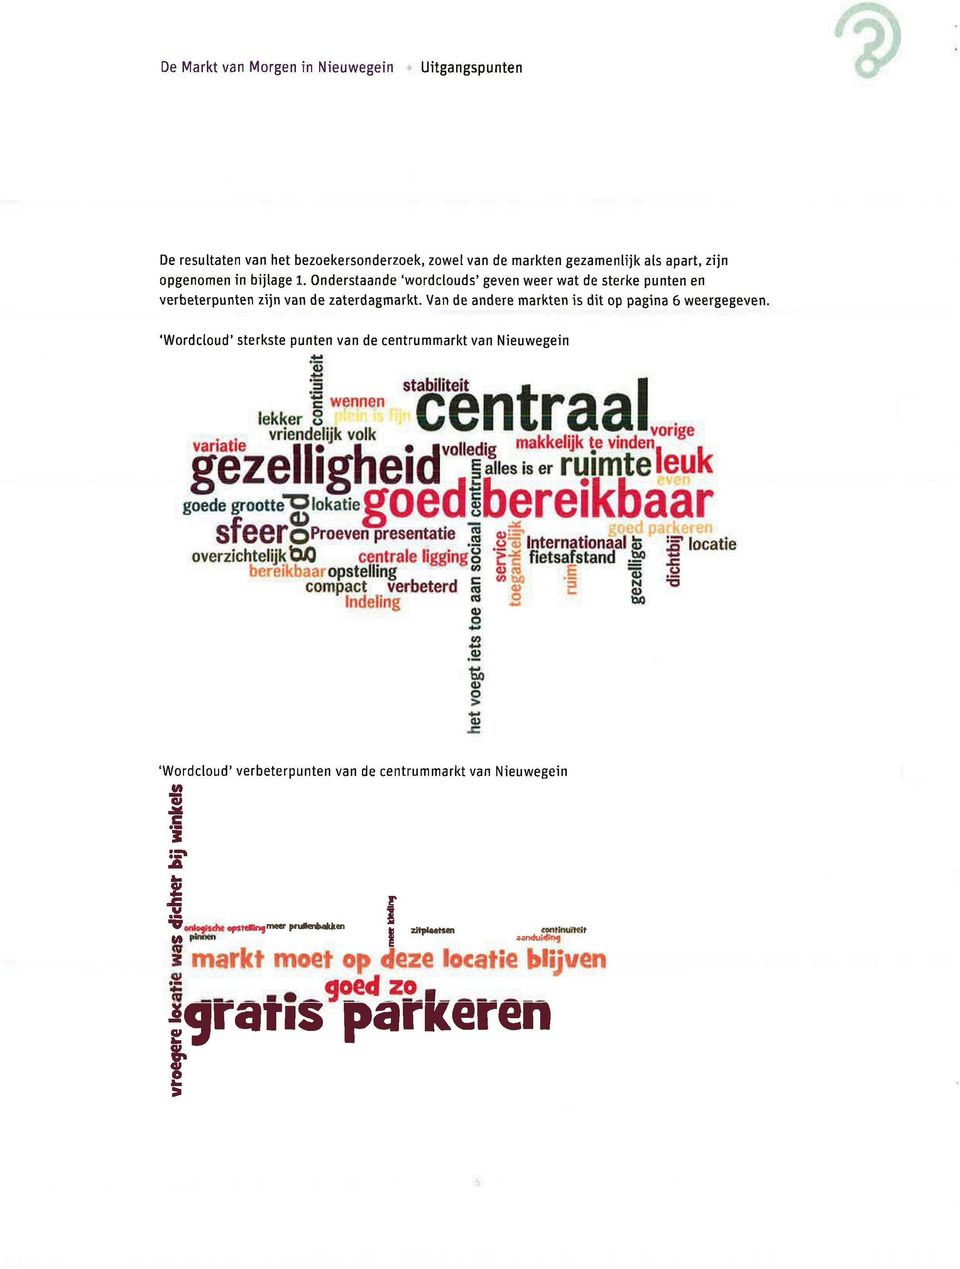 Van de andere markten is dit op pagina 6 weergegeven, 'Wordcloud' sterkste punten van de centrummarkt van Nieuwegein 'c wennen lekker S centraal stabiliteit «ariatie *fïf*». volledig makkelijk te.